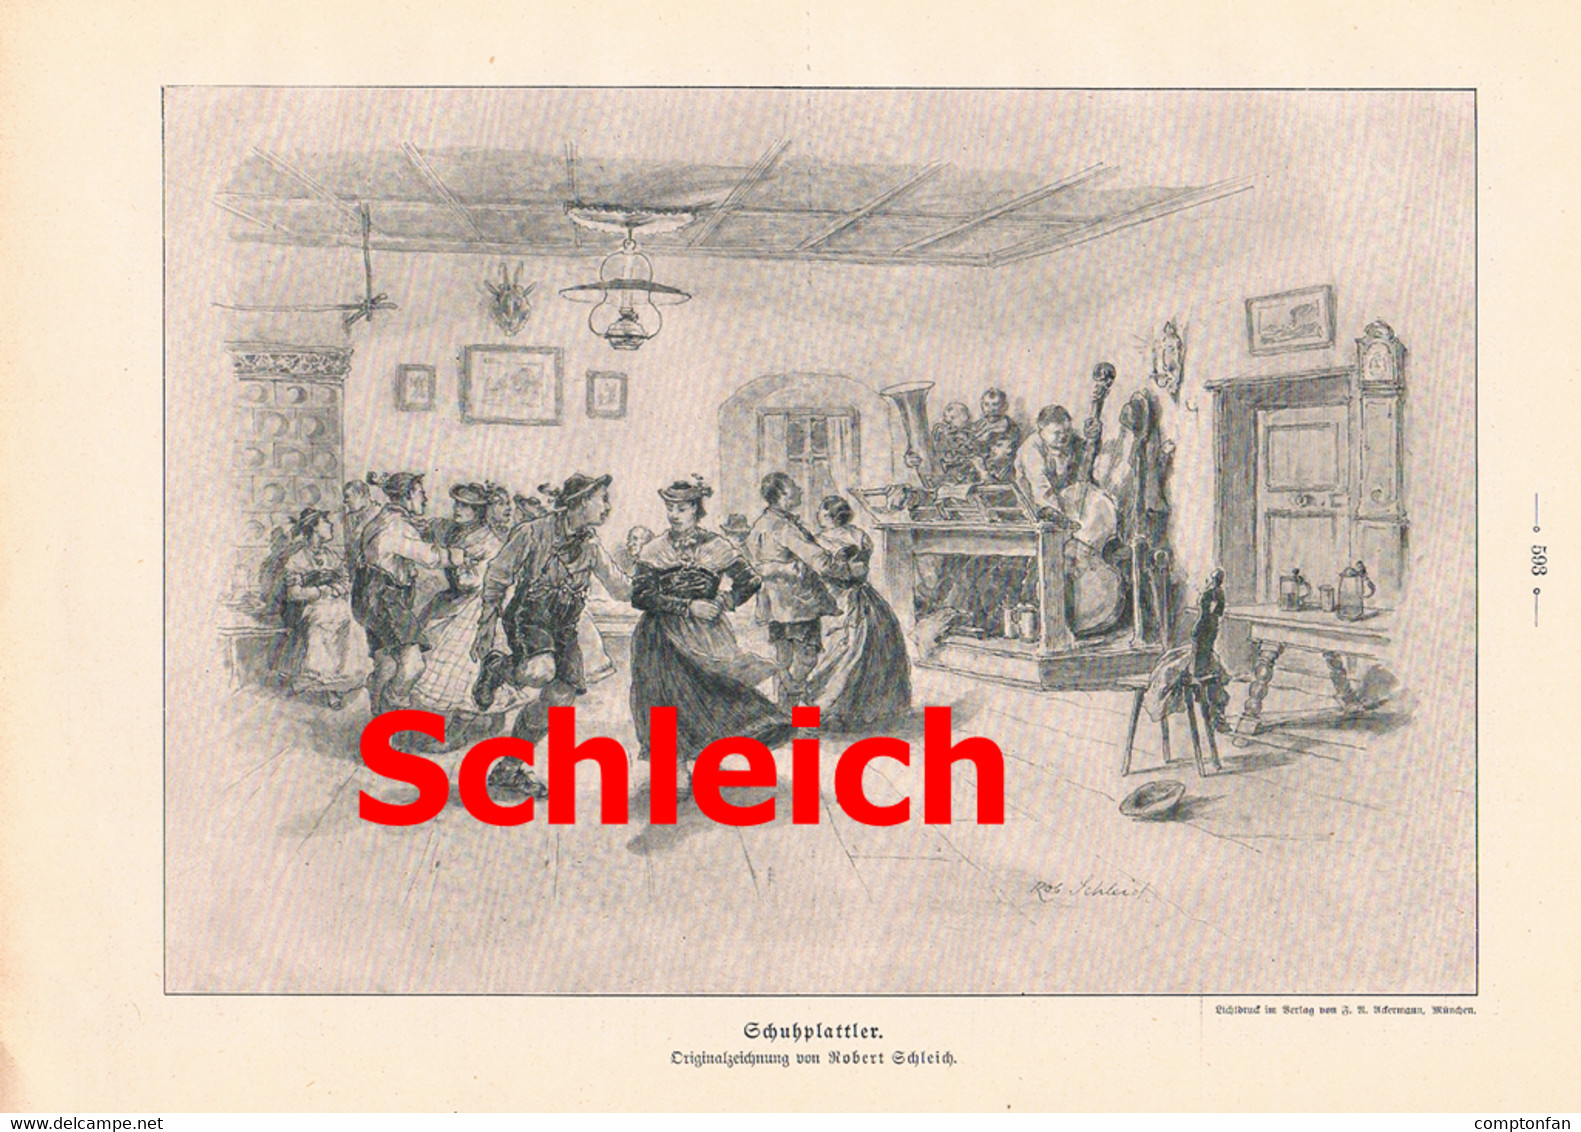 A102 812 Robert Schleich Schuhplattler Tegernsee Schliersee Artikel Mit Bild 1905 !! - Theatre & Dance